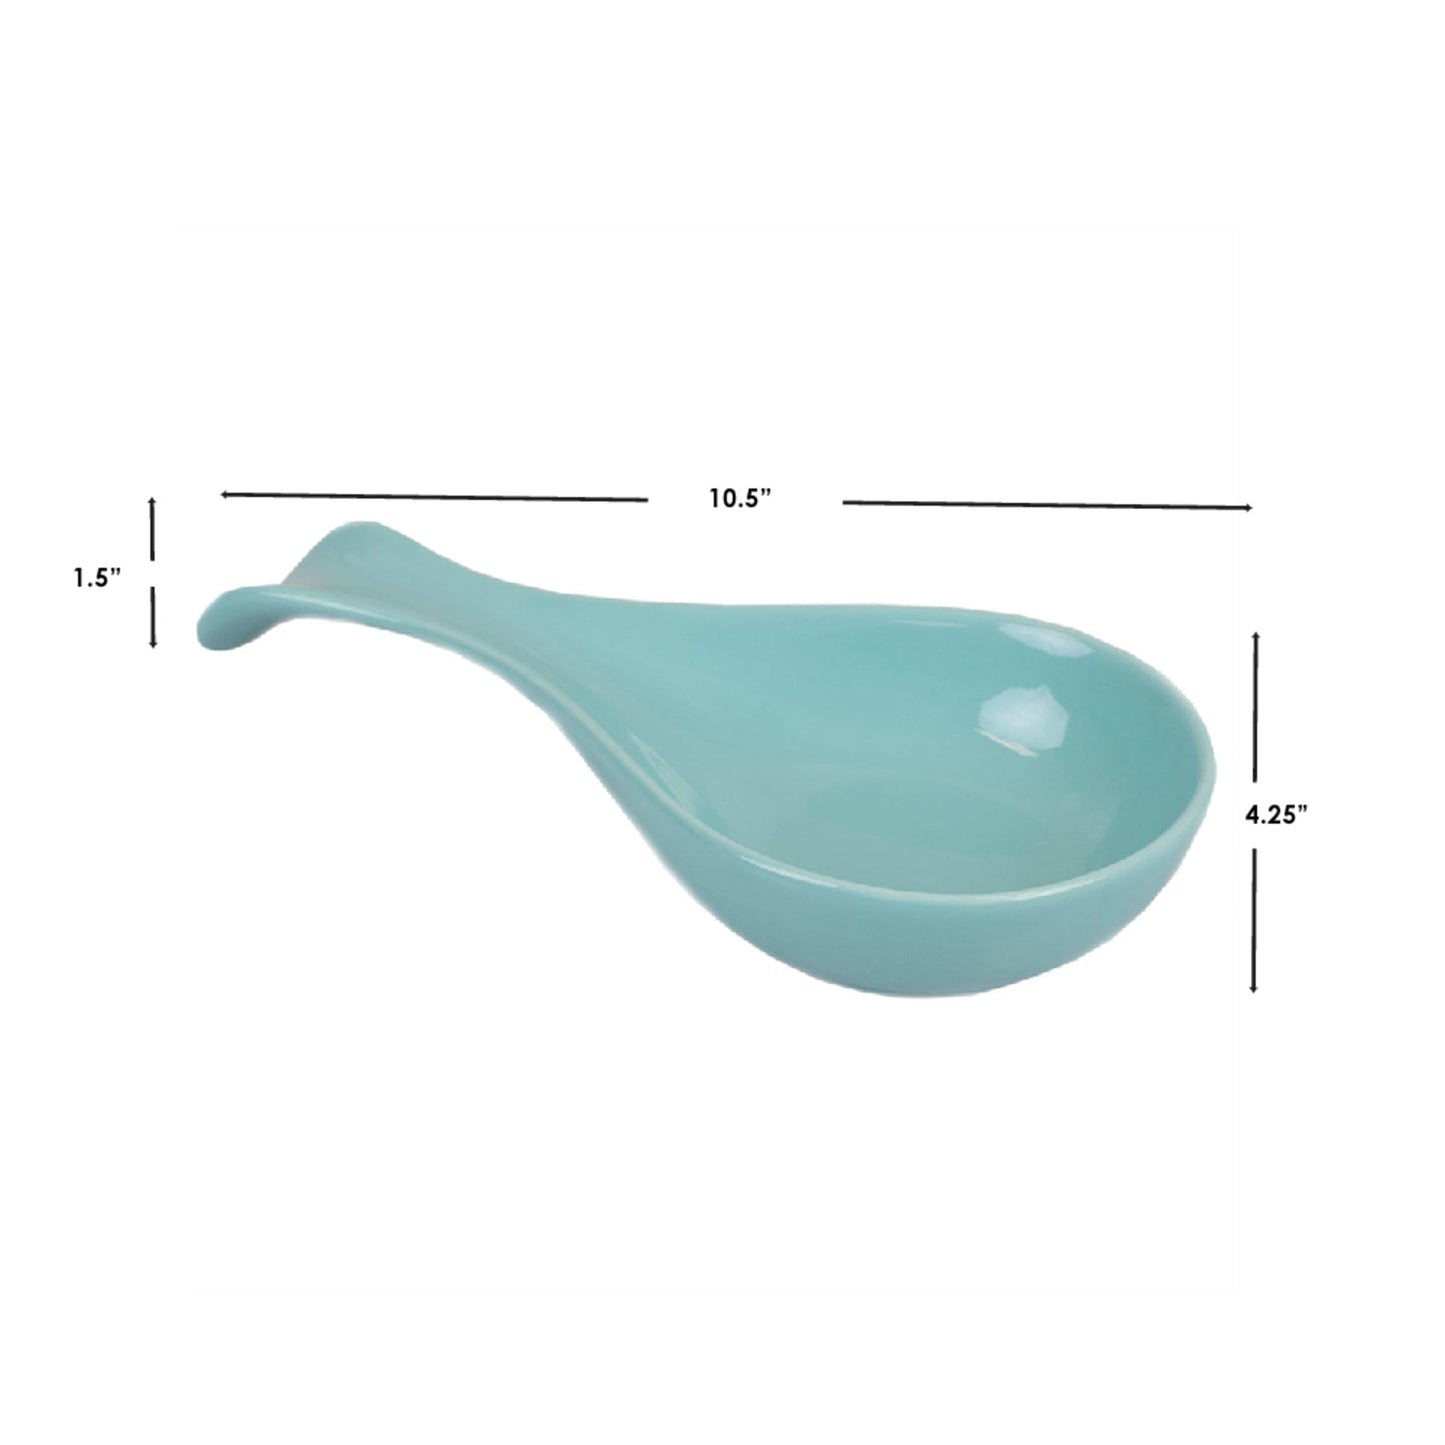 Ceramic Spoon Rest, Turquoise